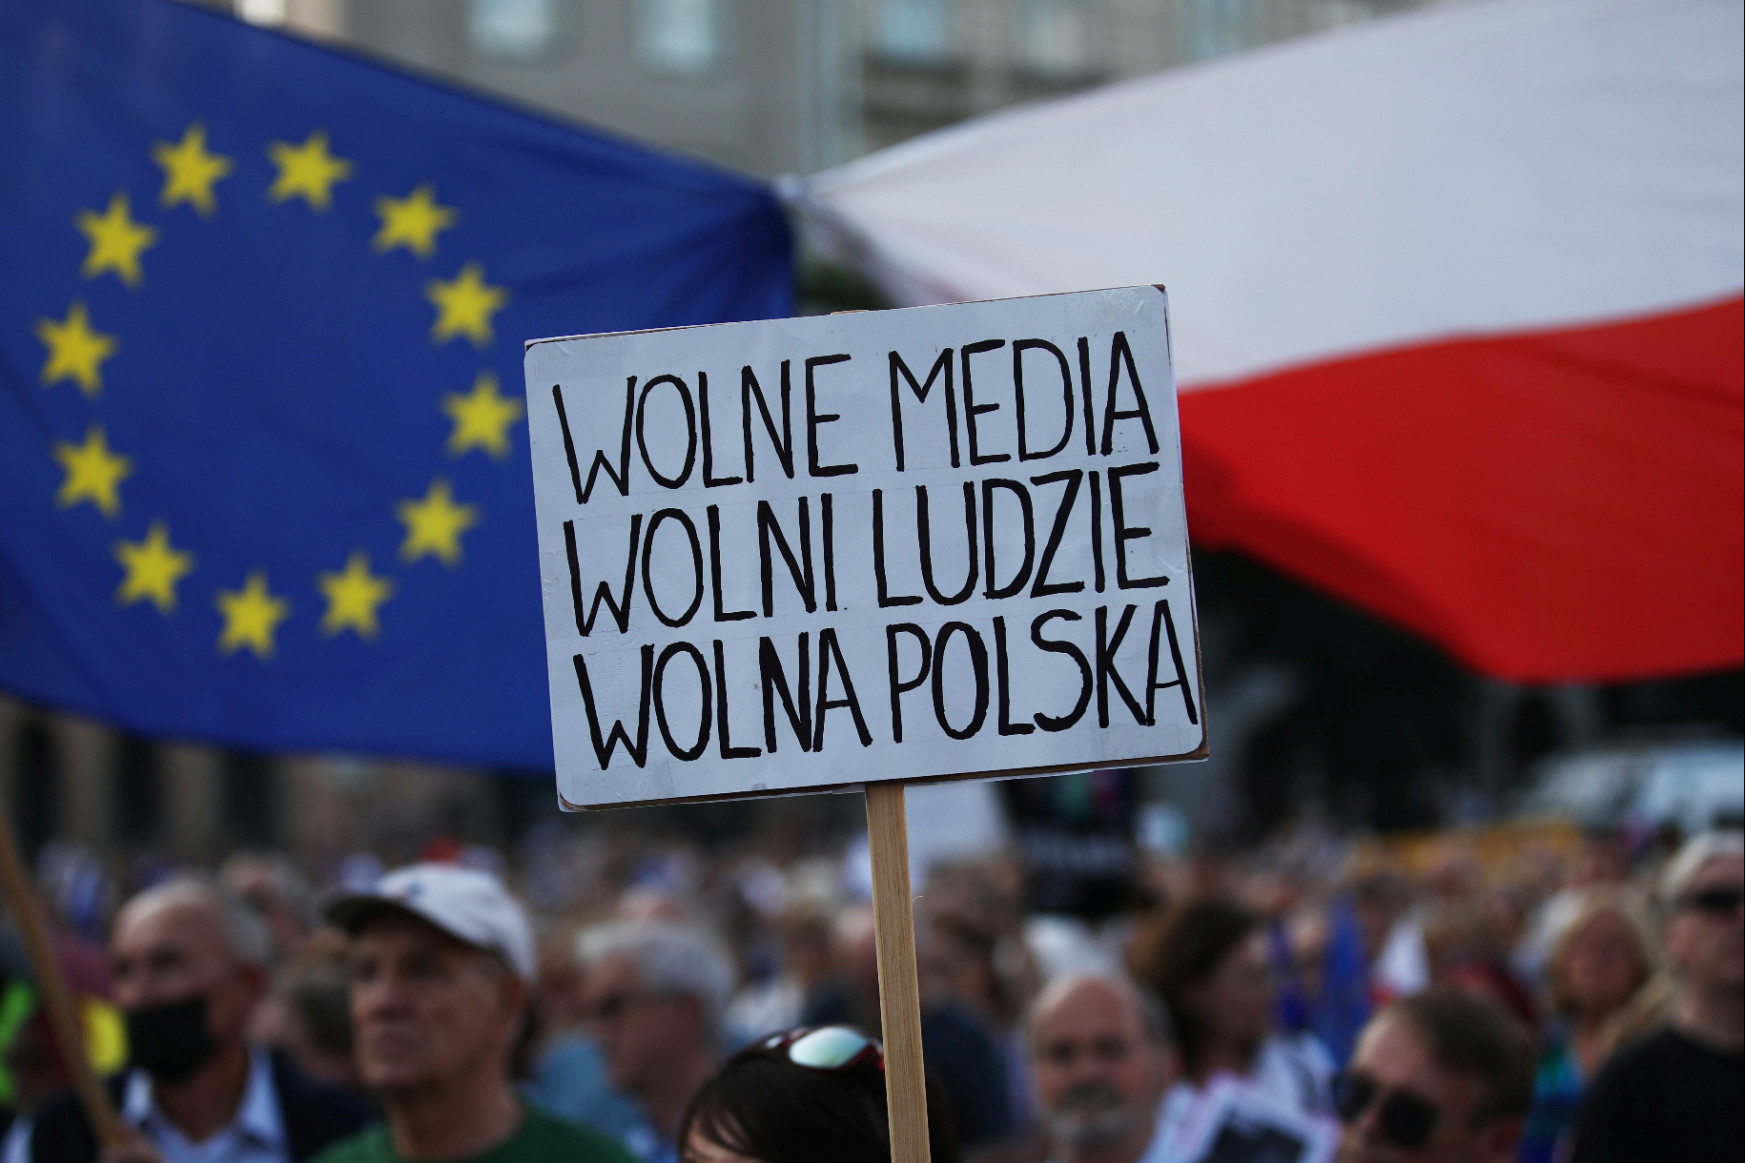 Egy hét alatt feje tetejére állt a lengyel politika